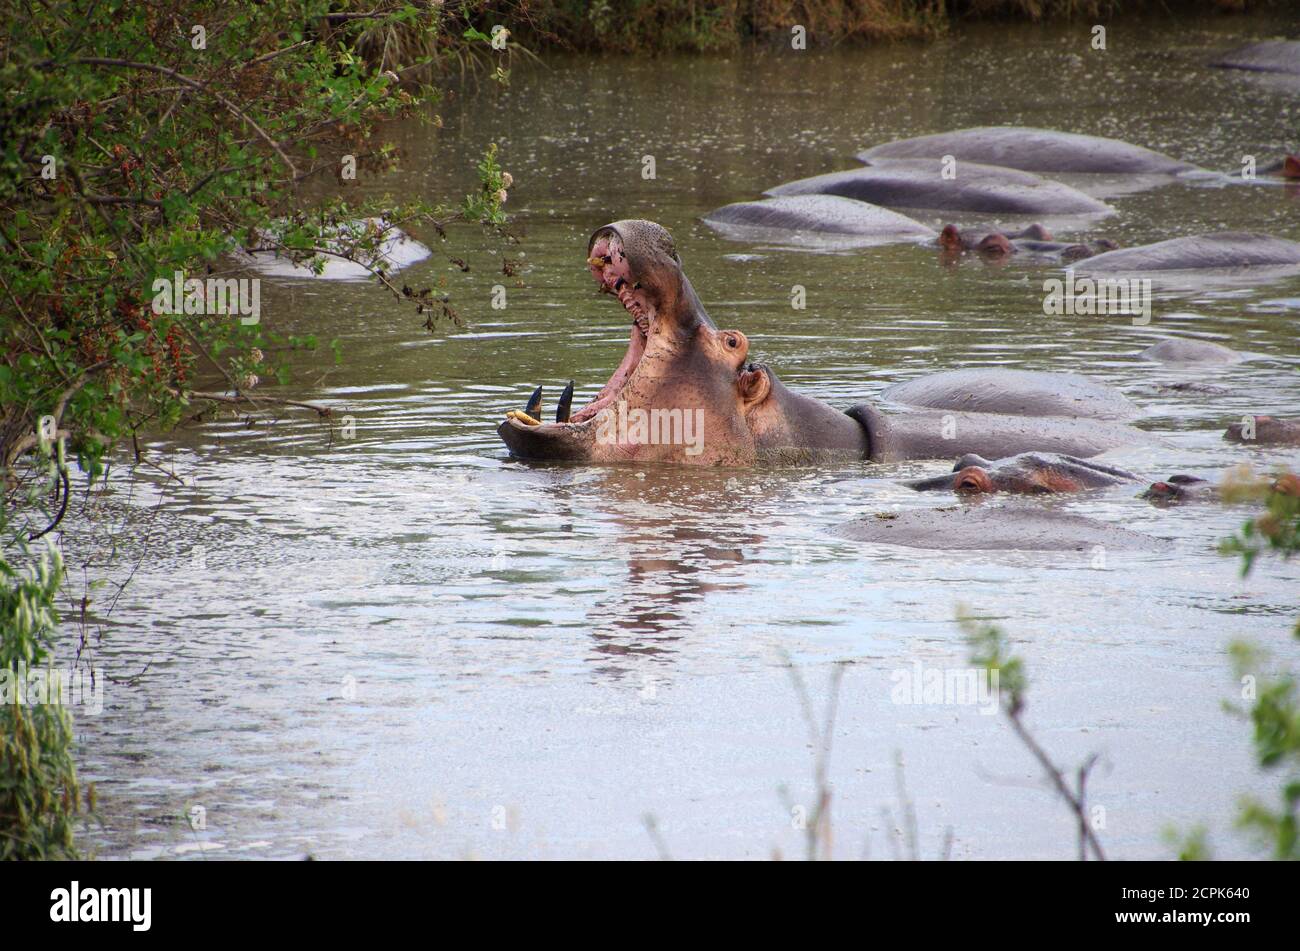 Hippopotamus in the Serengeti park in Tanzania Stock Photo